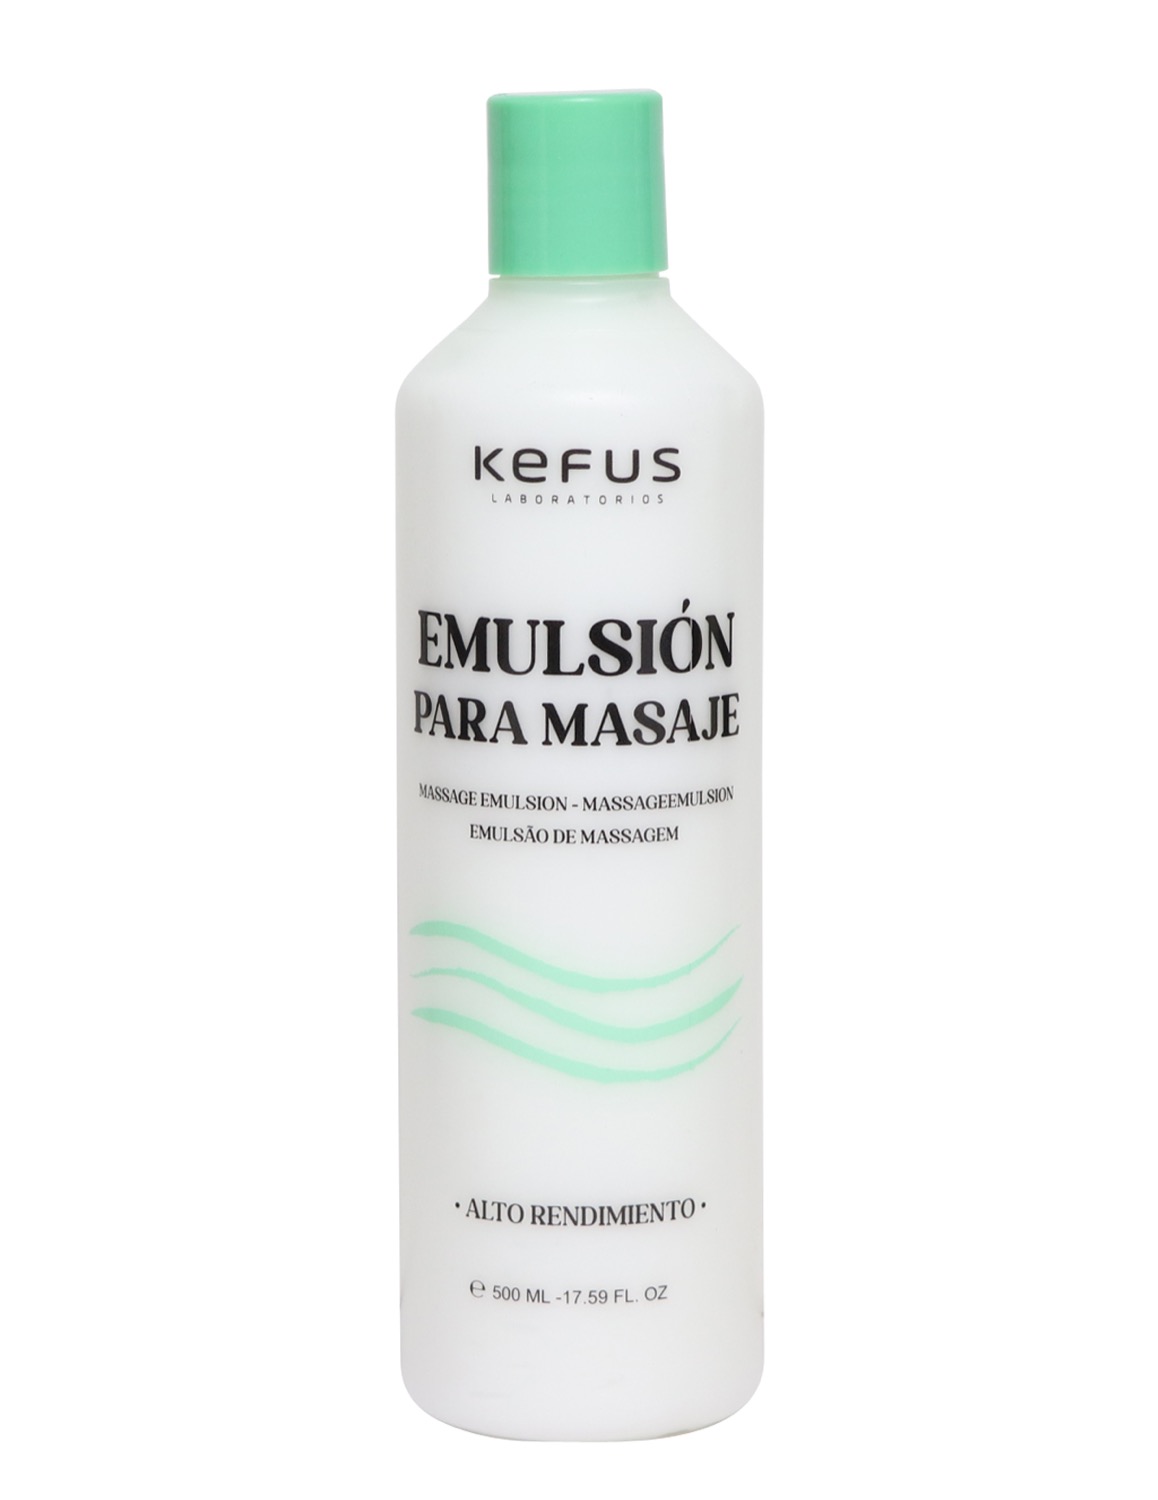 Emulsion para Masaje profesional Kefus 500 ml